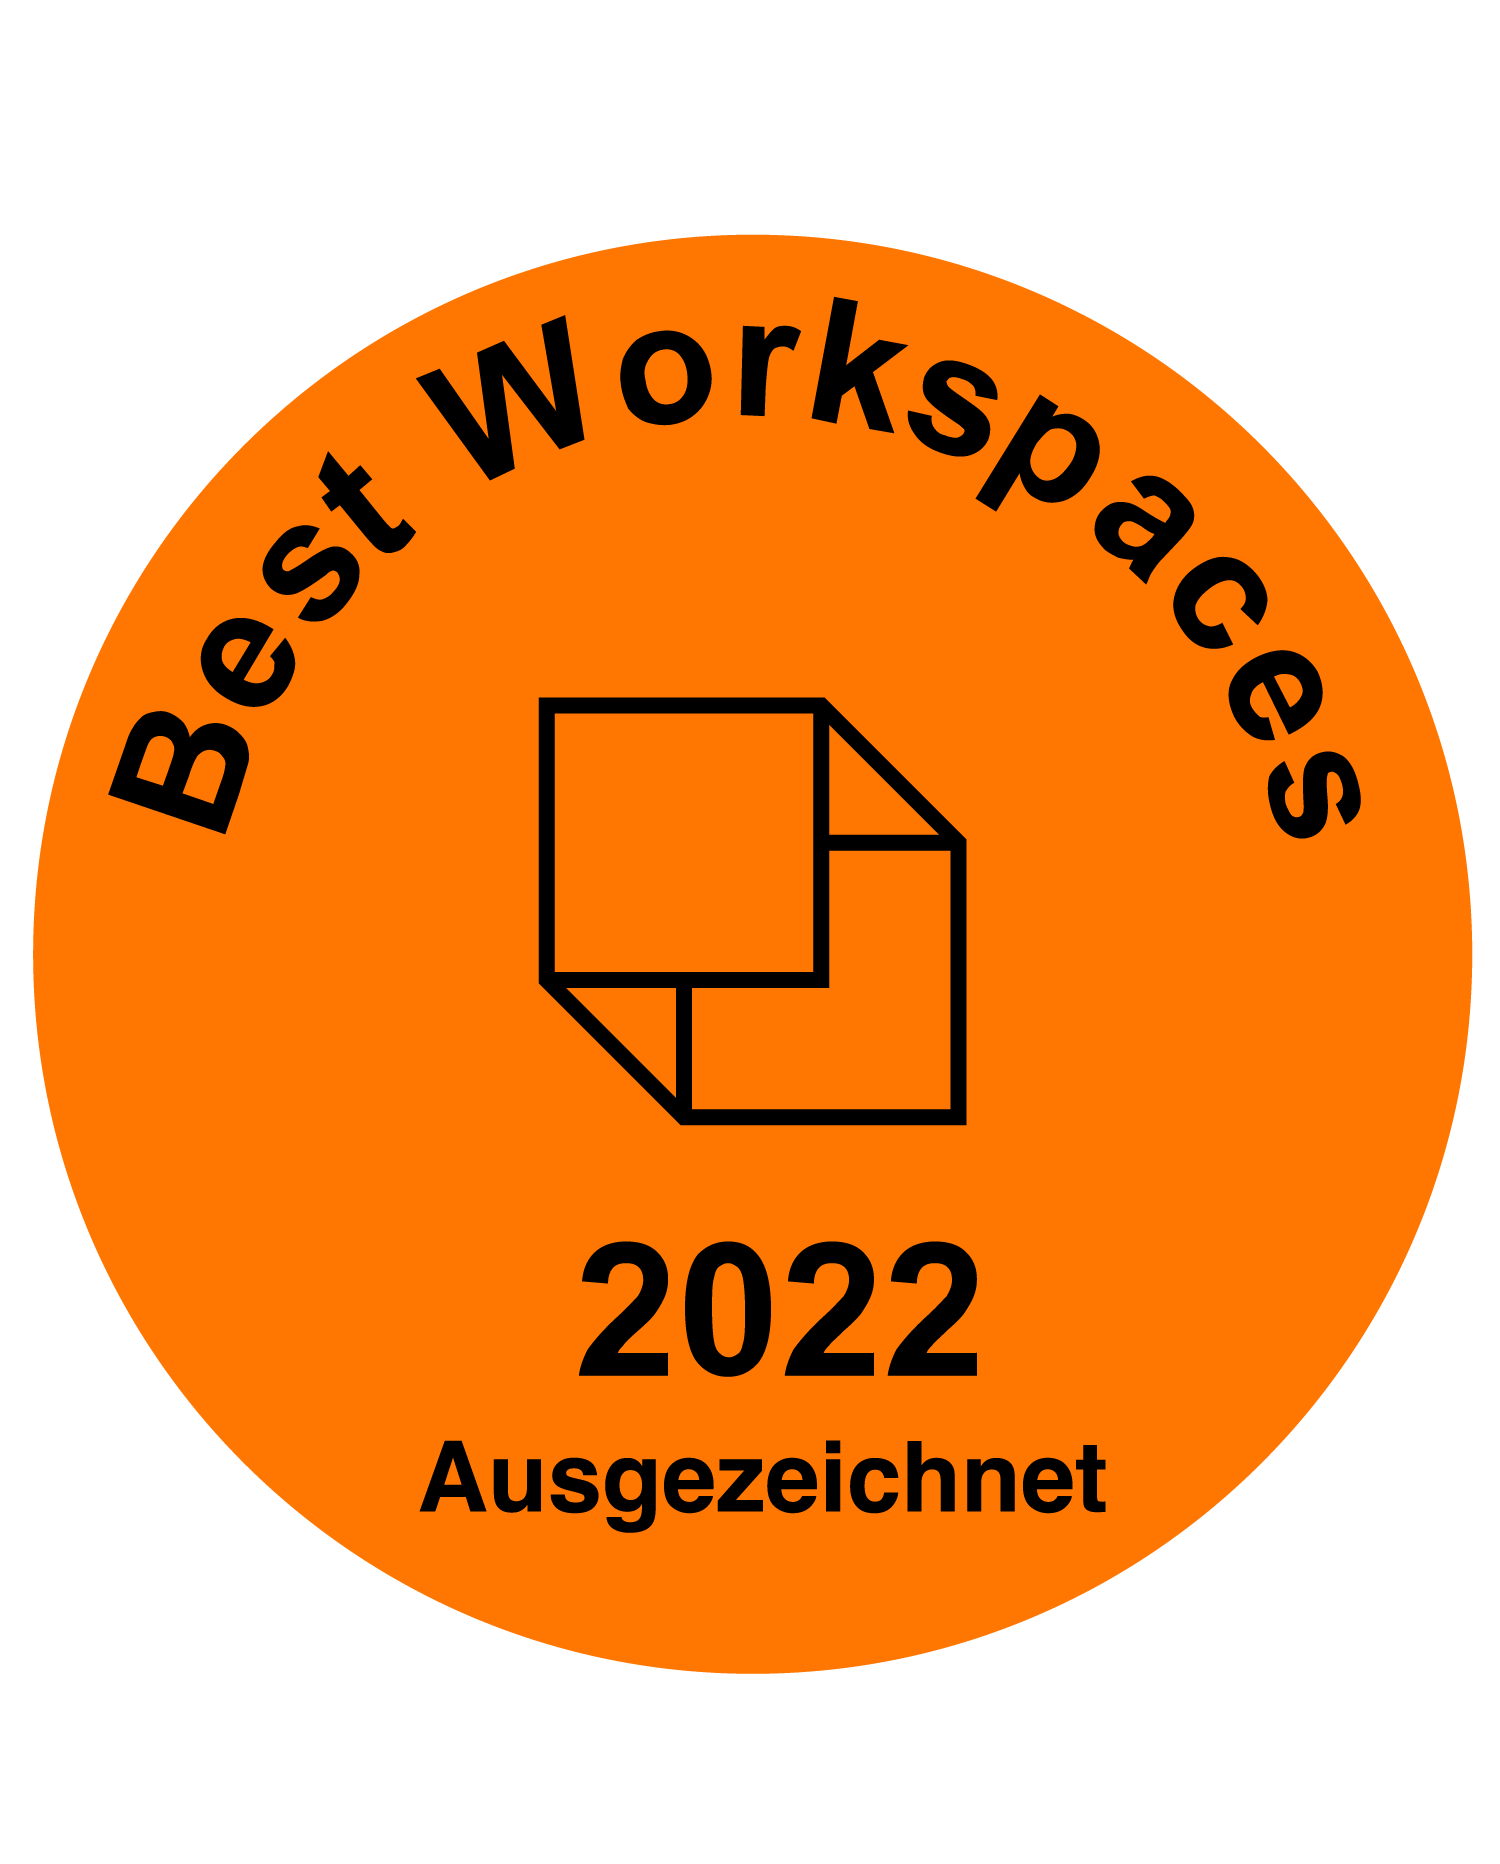 Best Workspaces 2022 nominiert